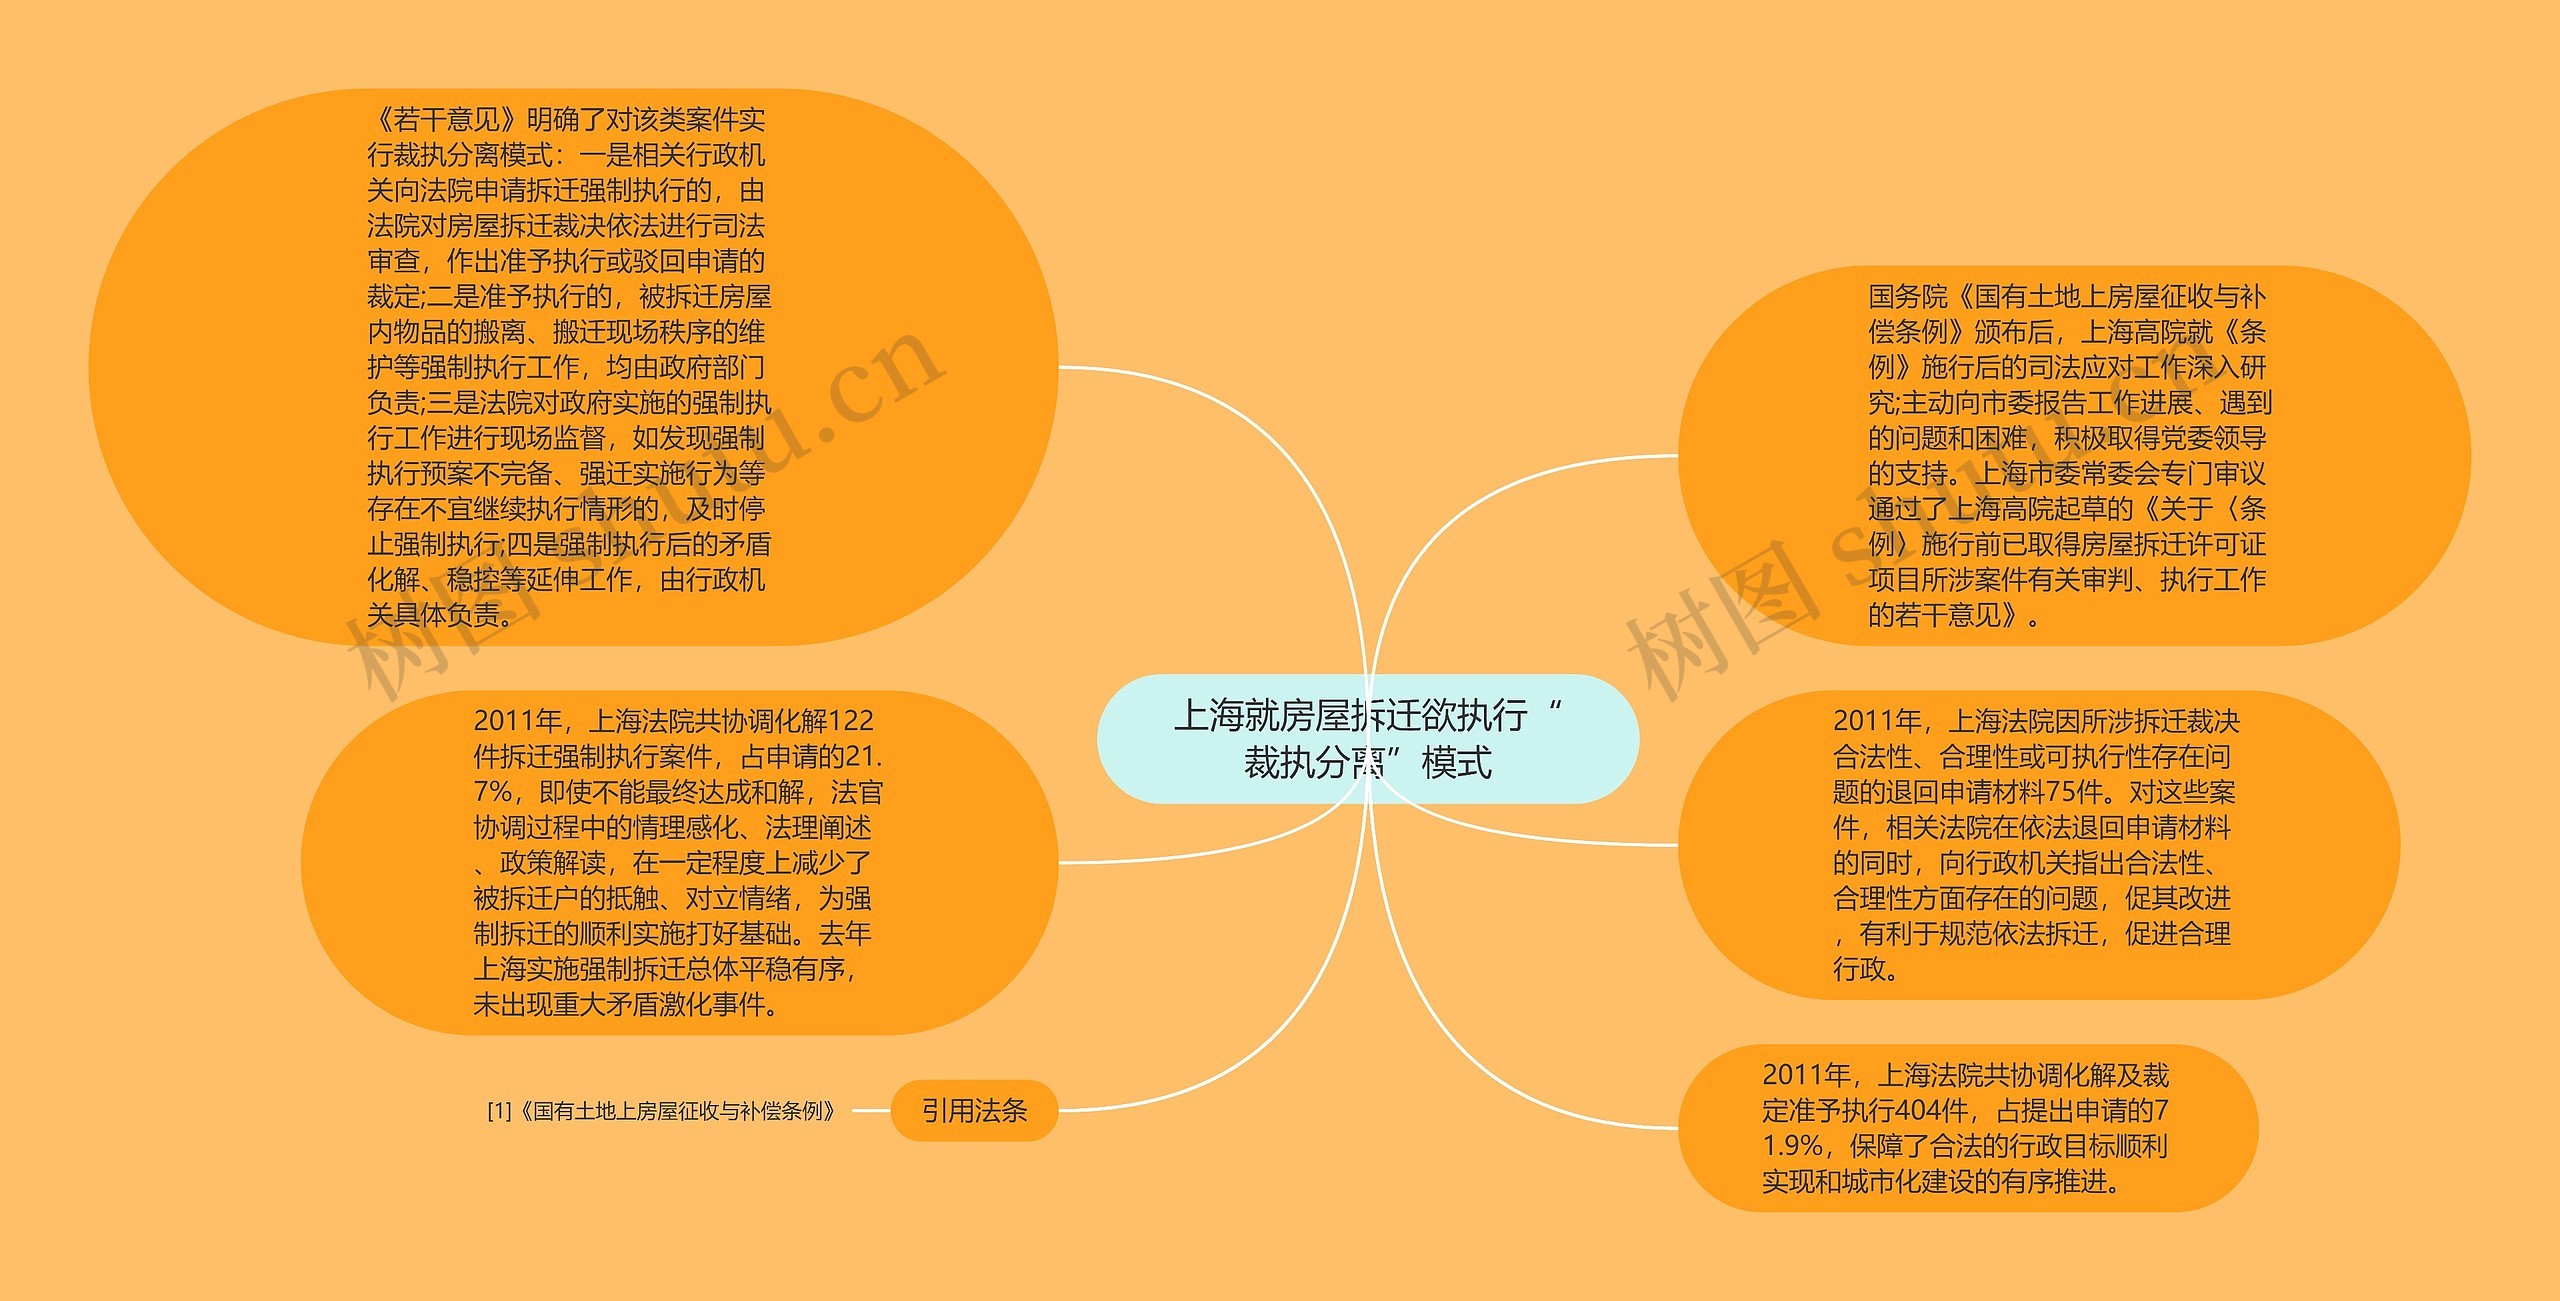 上海就房屋拆迁欲执行“裁执分离”模式思维导图